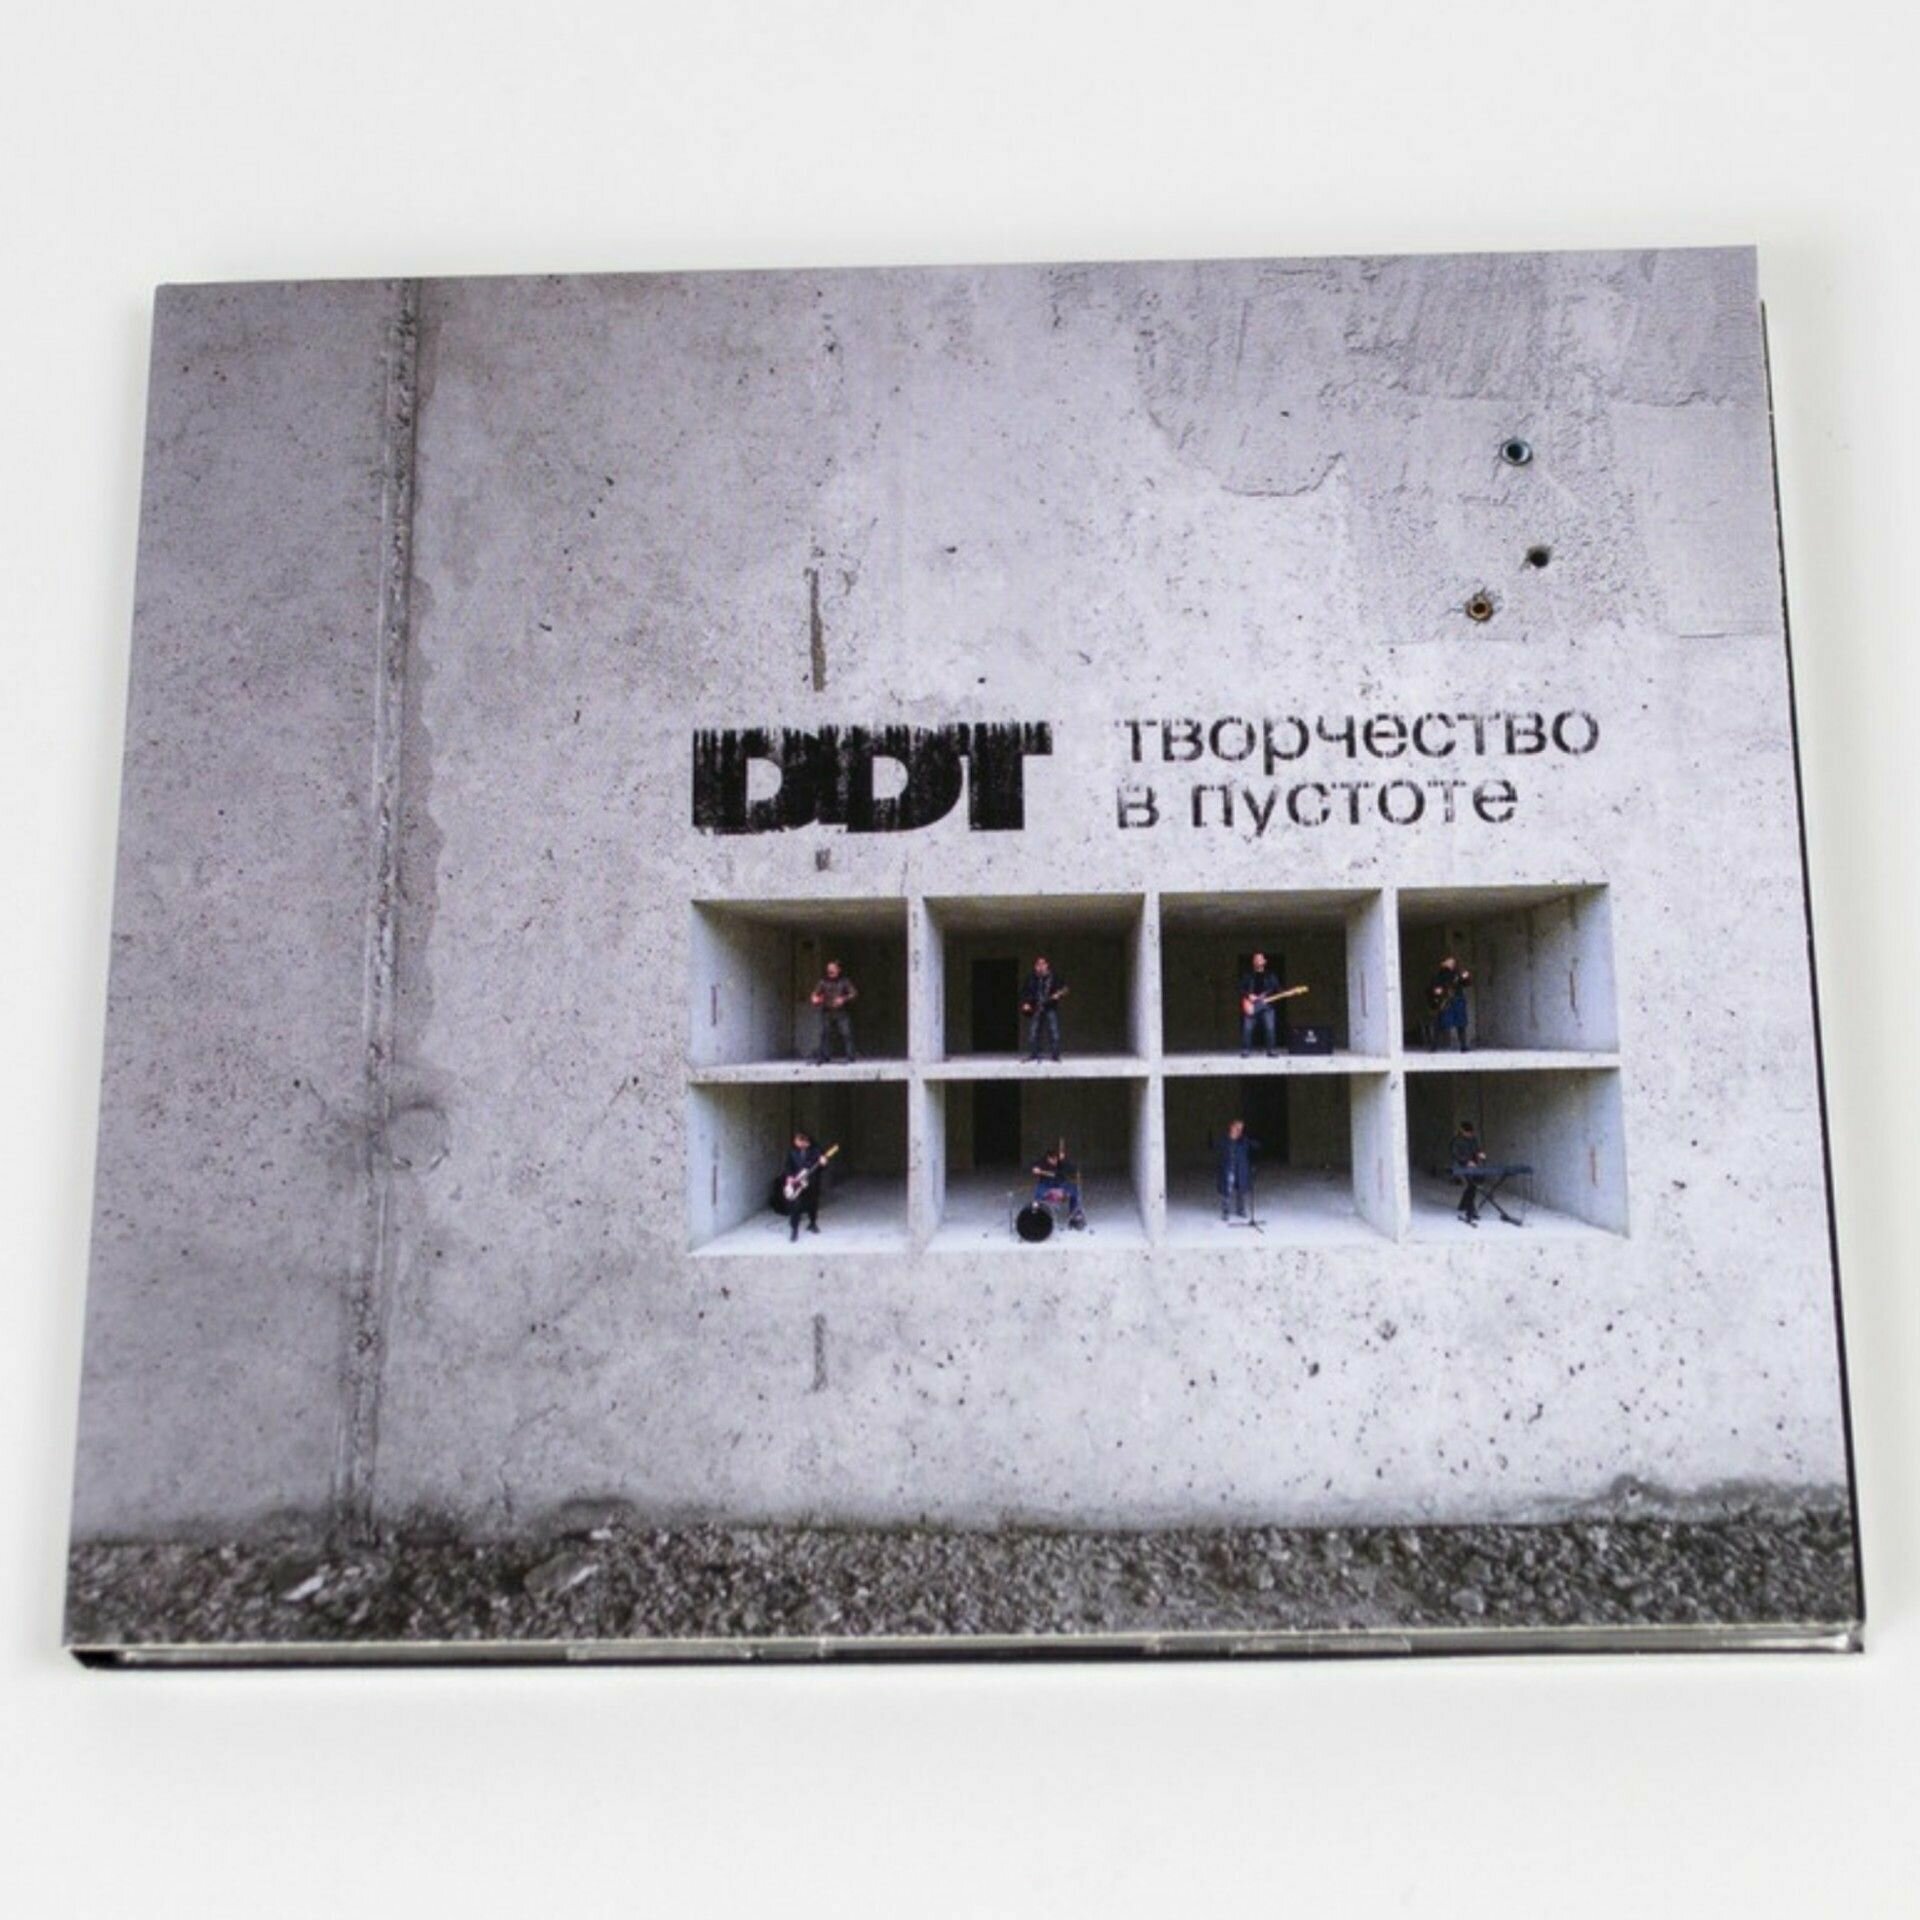 CD "ДДТ - Творчество в пустоте" Новый альбом группы DDT на компакт-диске